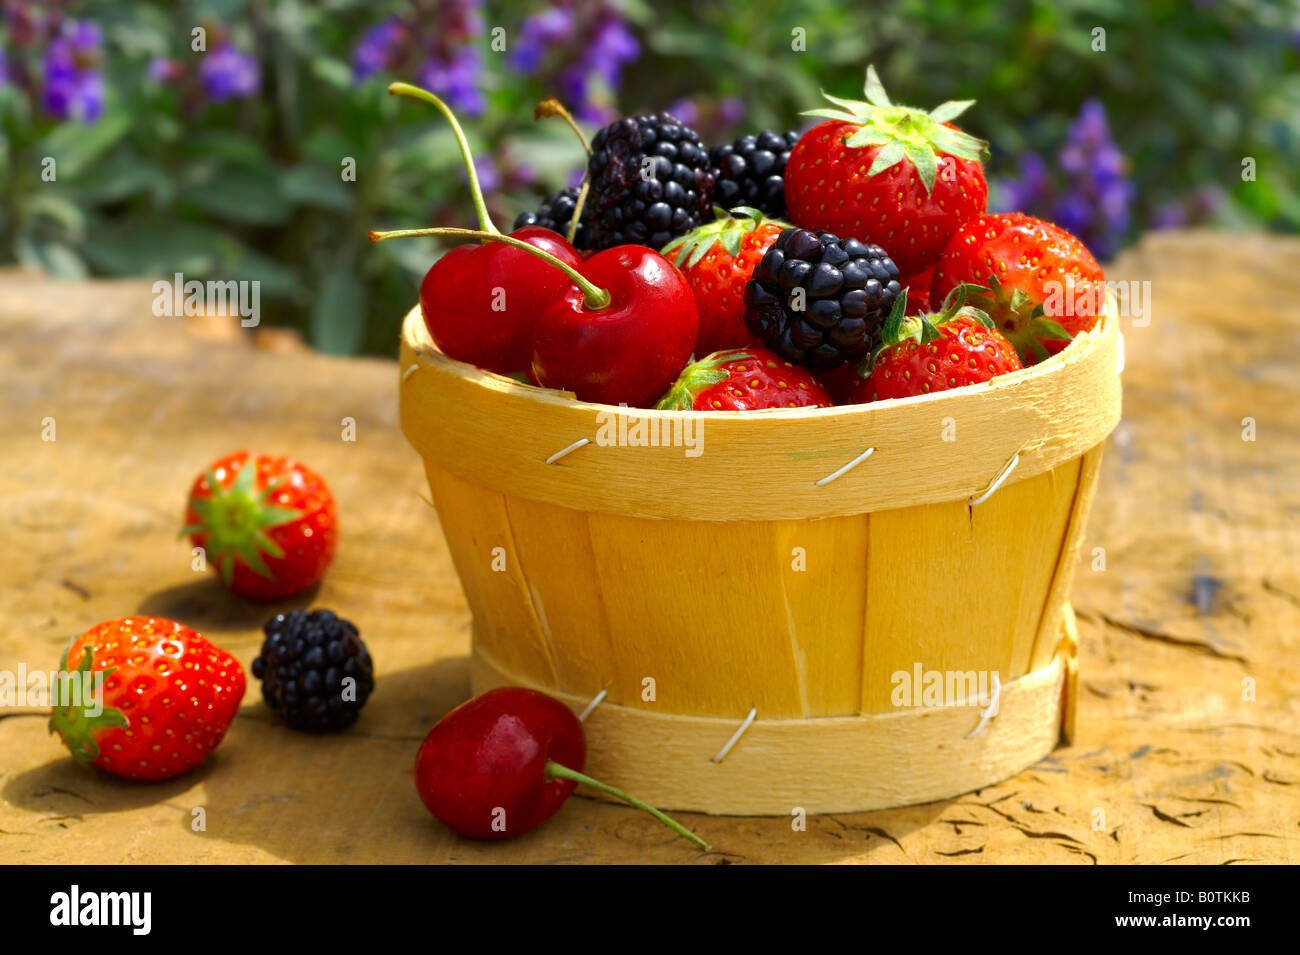 Summer fruits - Organic fresh picked cherries, blackberries and strawberries Stock Photo